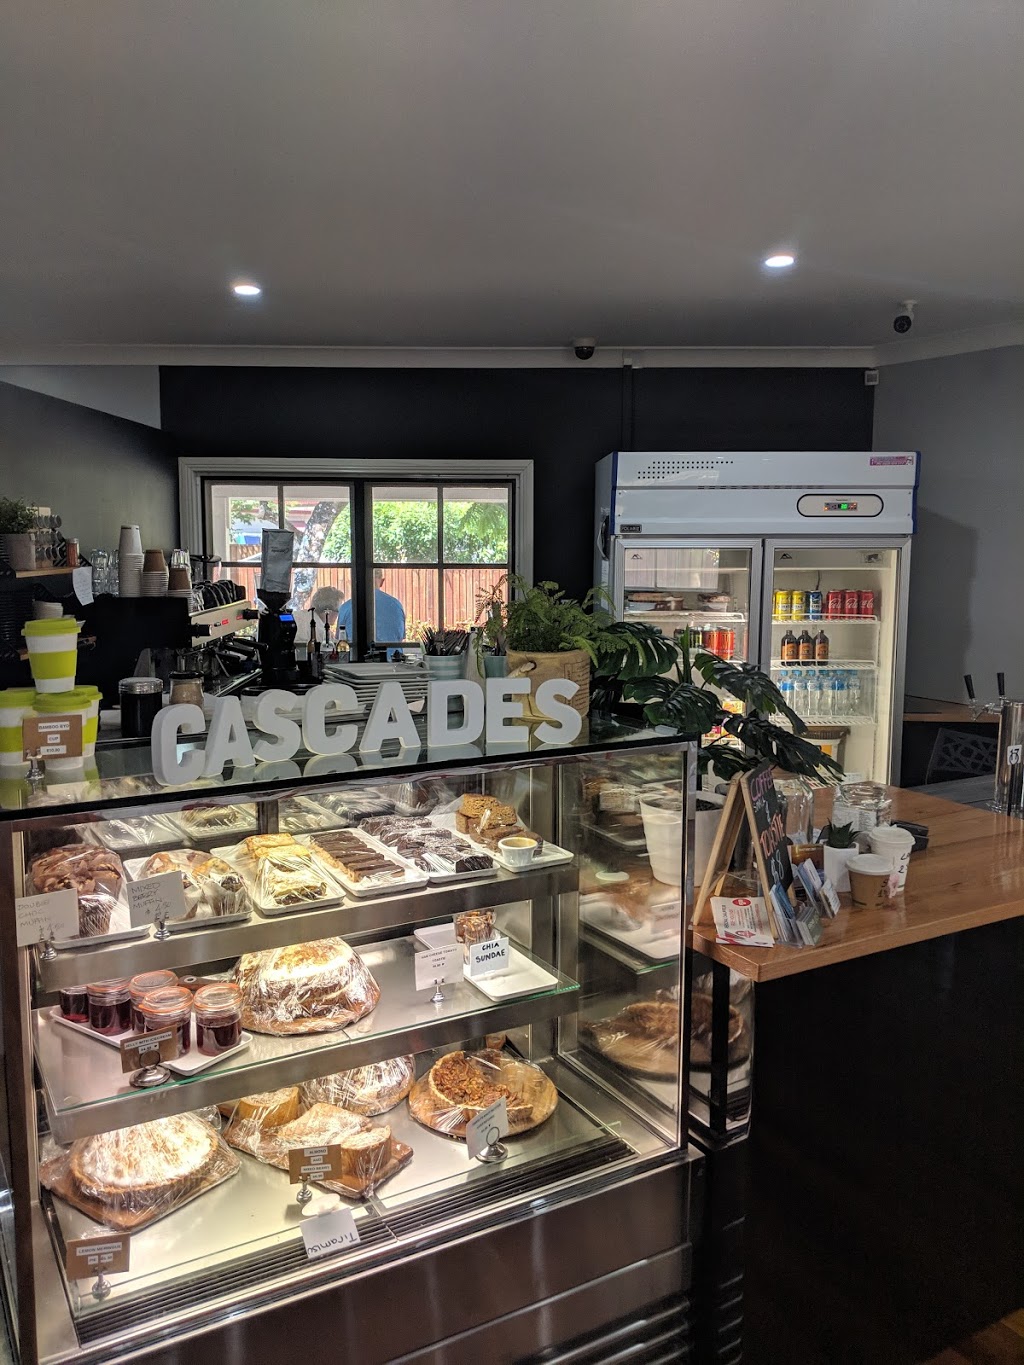 Cascades Cafe Bar And Grill | cafe | 1 Gamburra Dr, Redlynch QLD 4870, Australia | 0401904993 OR +61 401 904 993